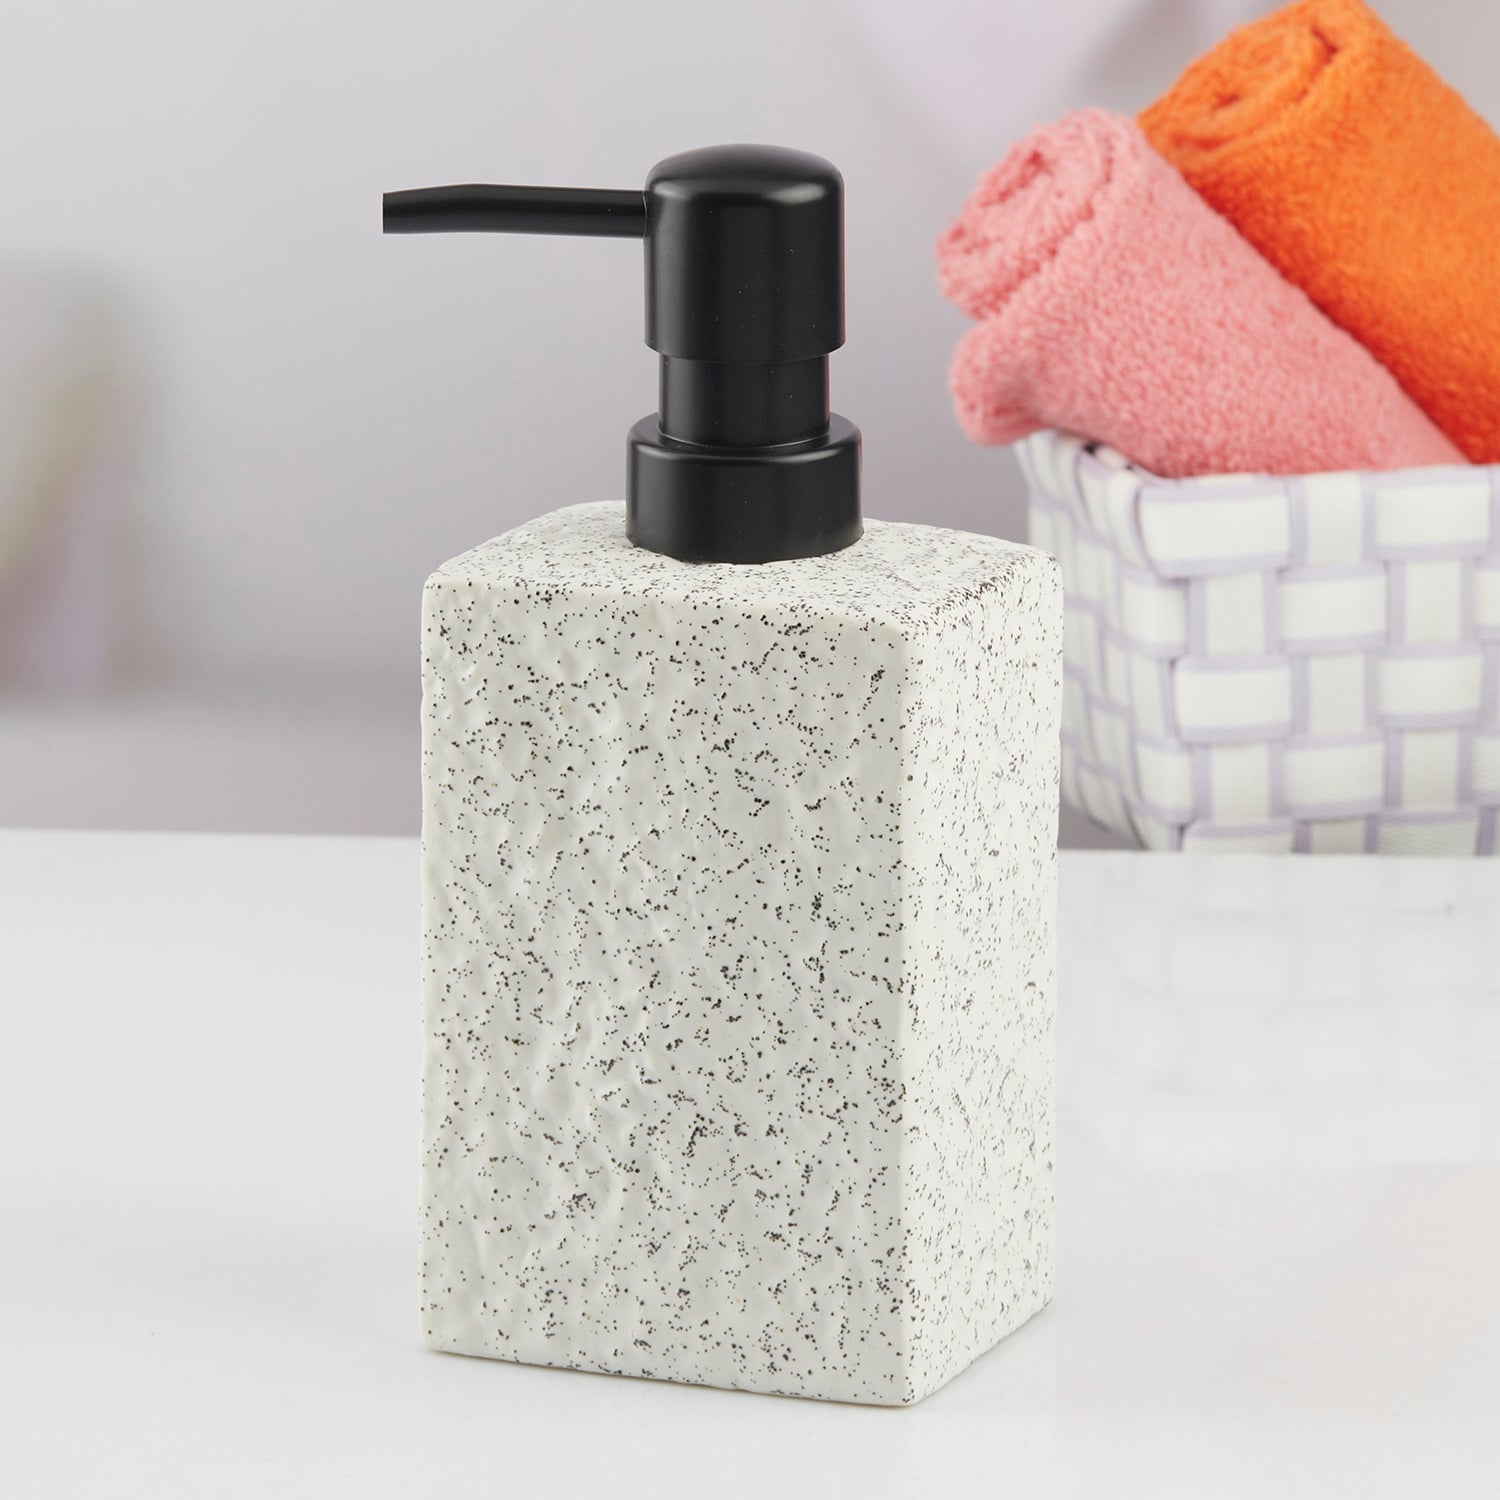 Ceramic Soap Dispenser liquid handwash pump for Bathroom, Set of 1, White (10621)